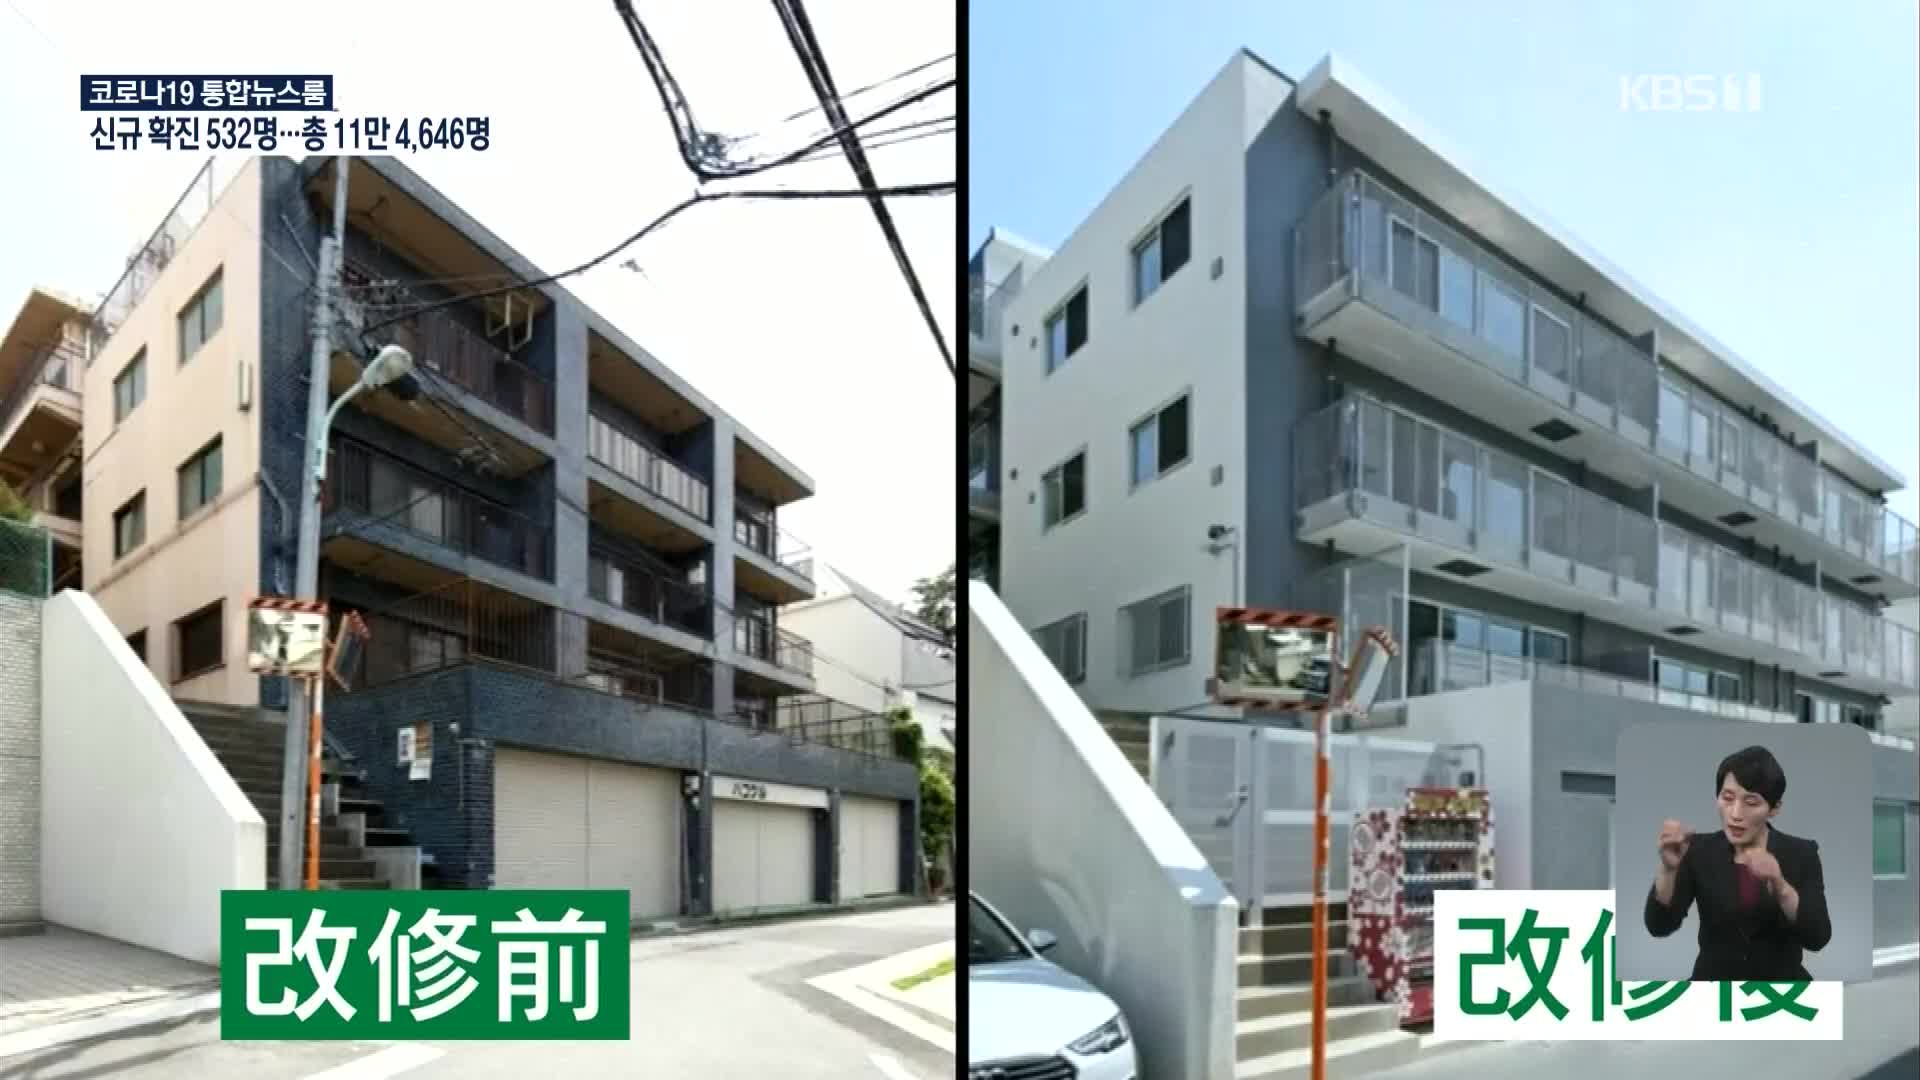 일본, 오래된 아파트 내진화 지지부진